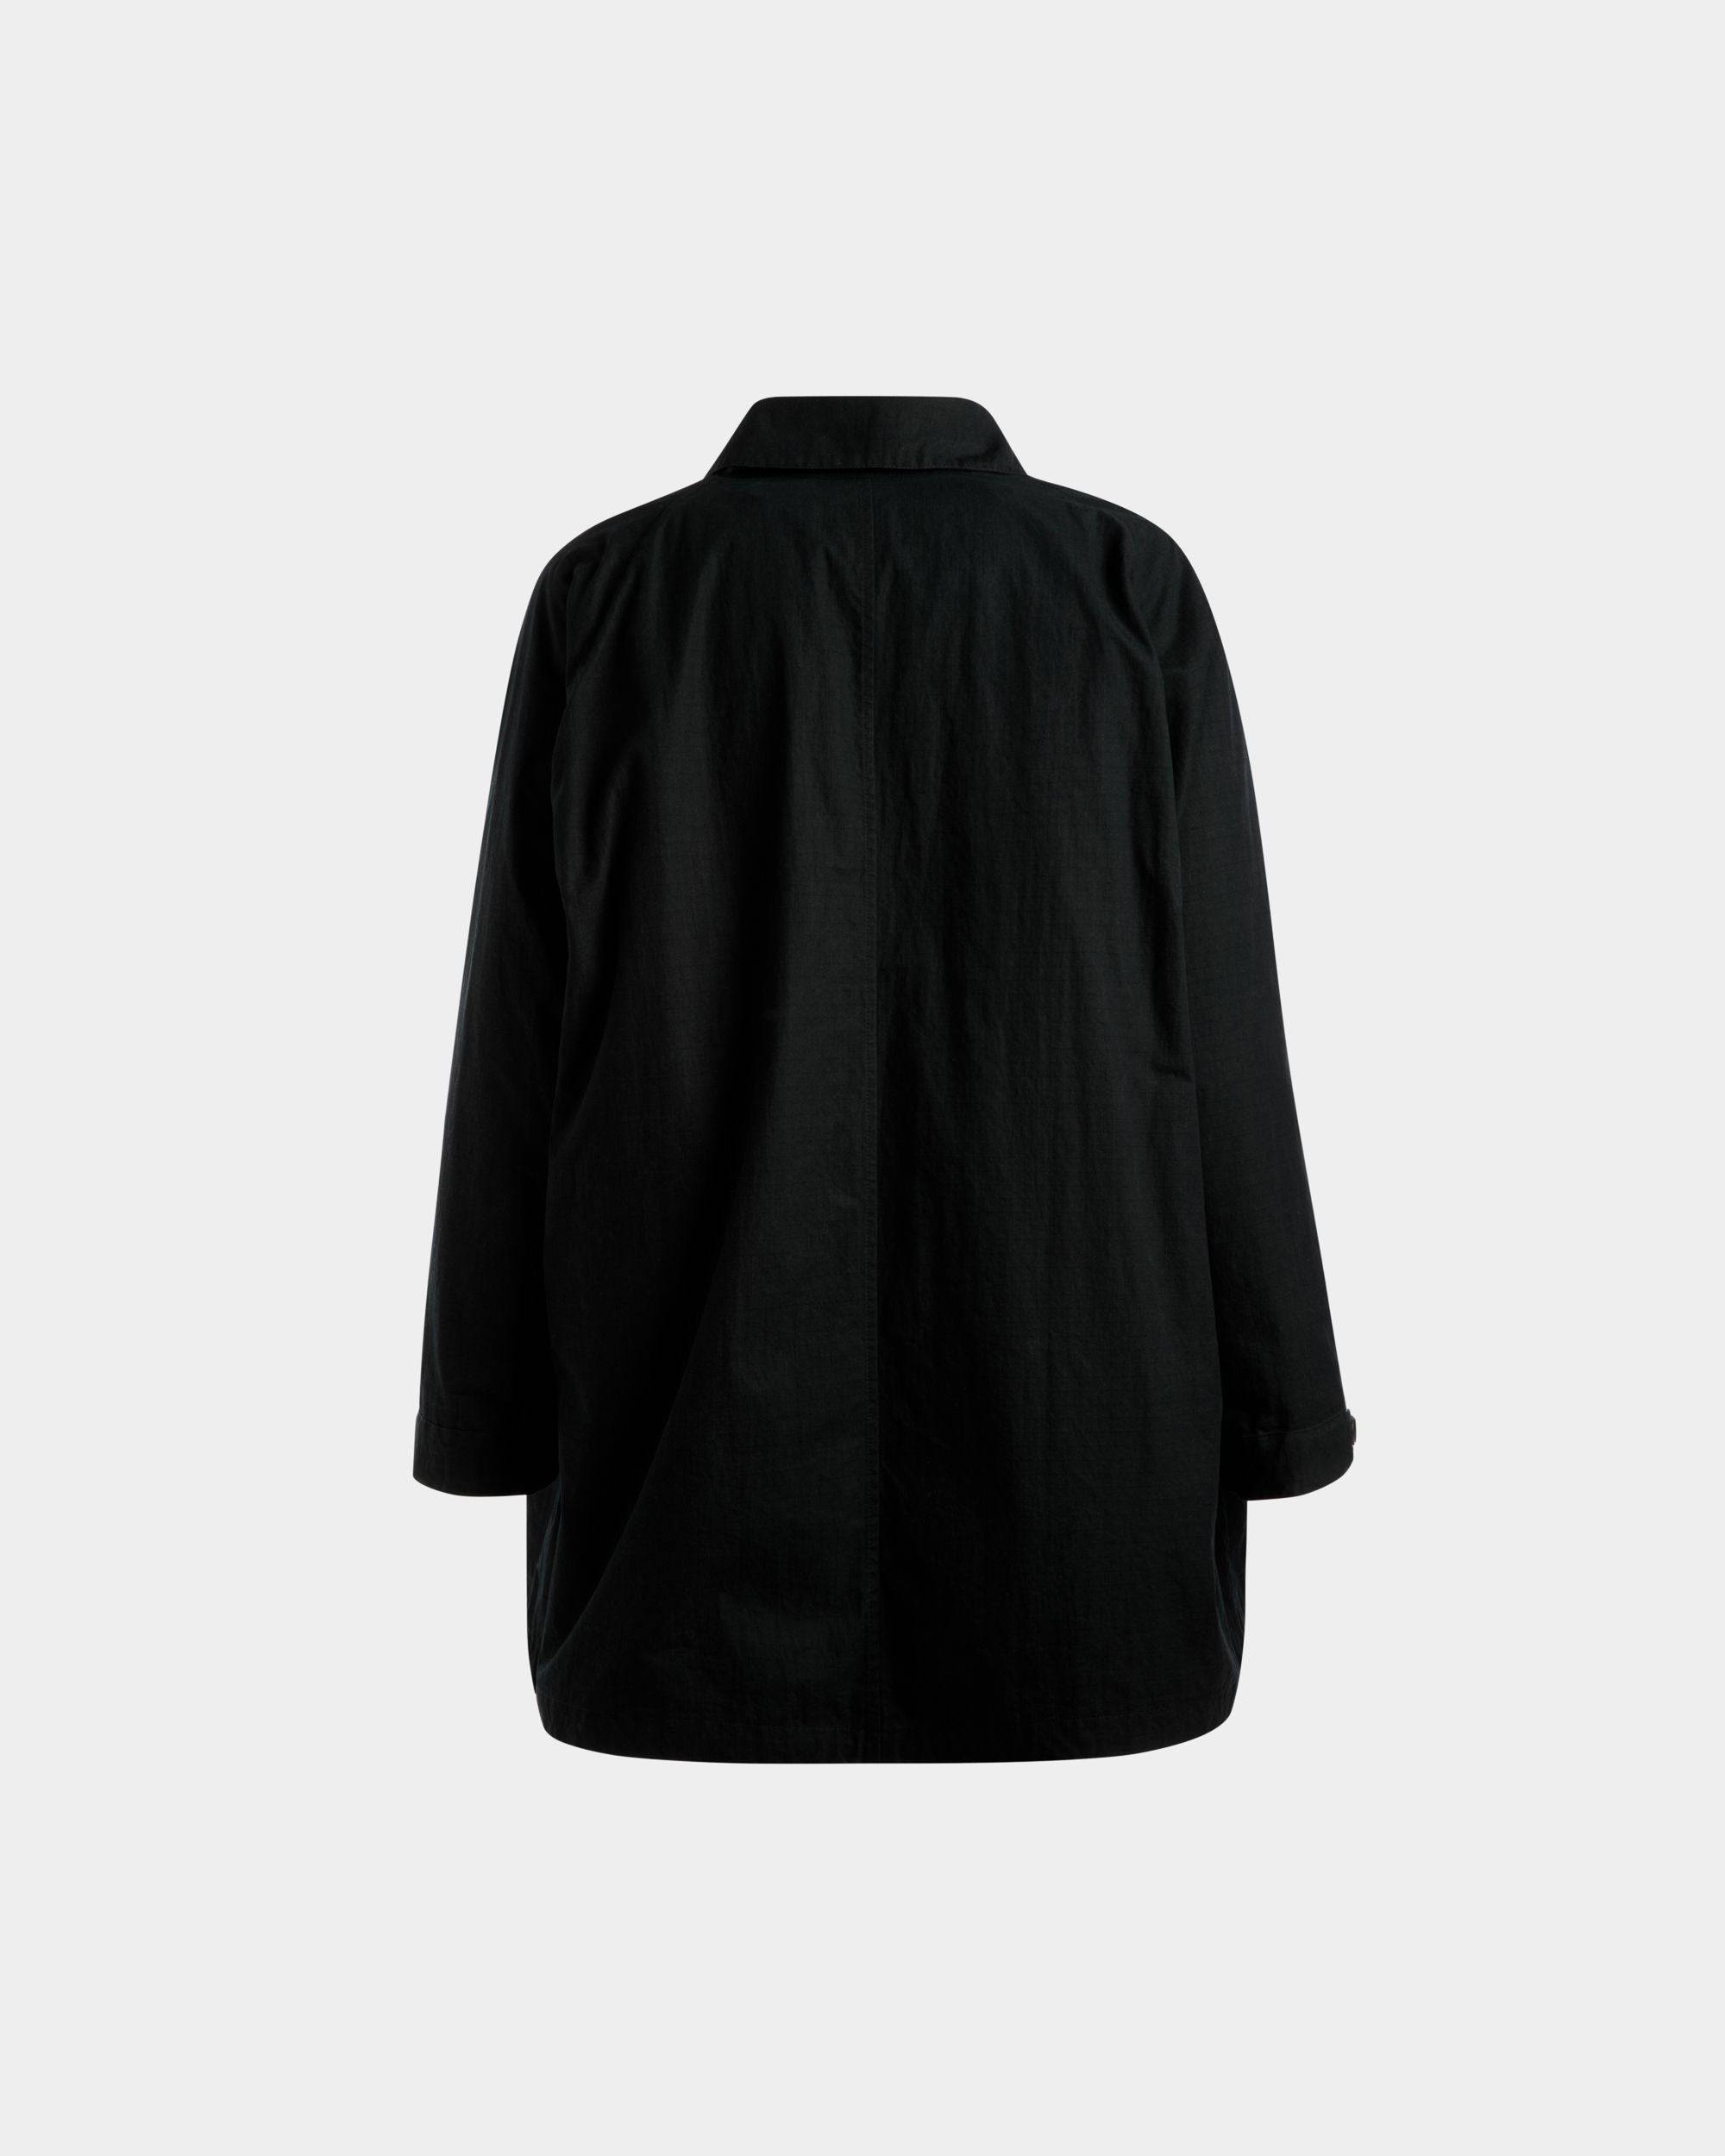 Duster Coat | Men's Coat | Black Polyamide | Bally | Still Life Back